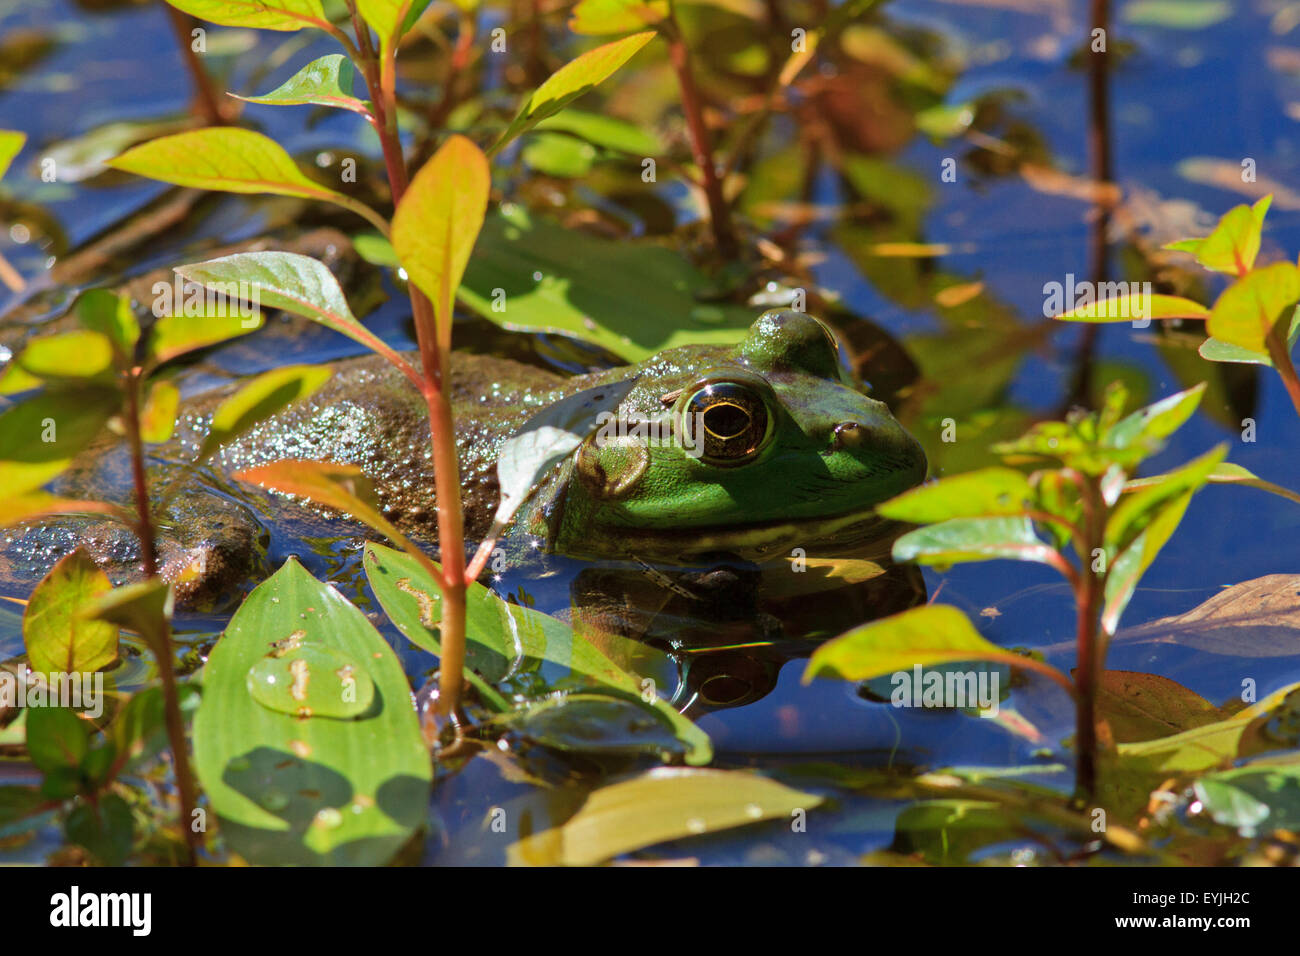 American bullfrog (Rana catesbeiana), Stock Photo